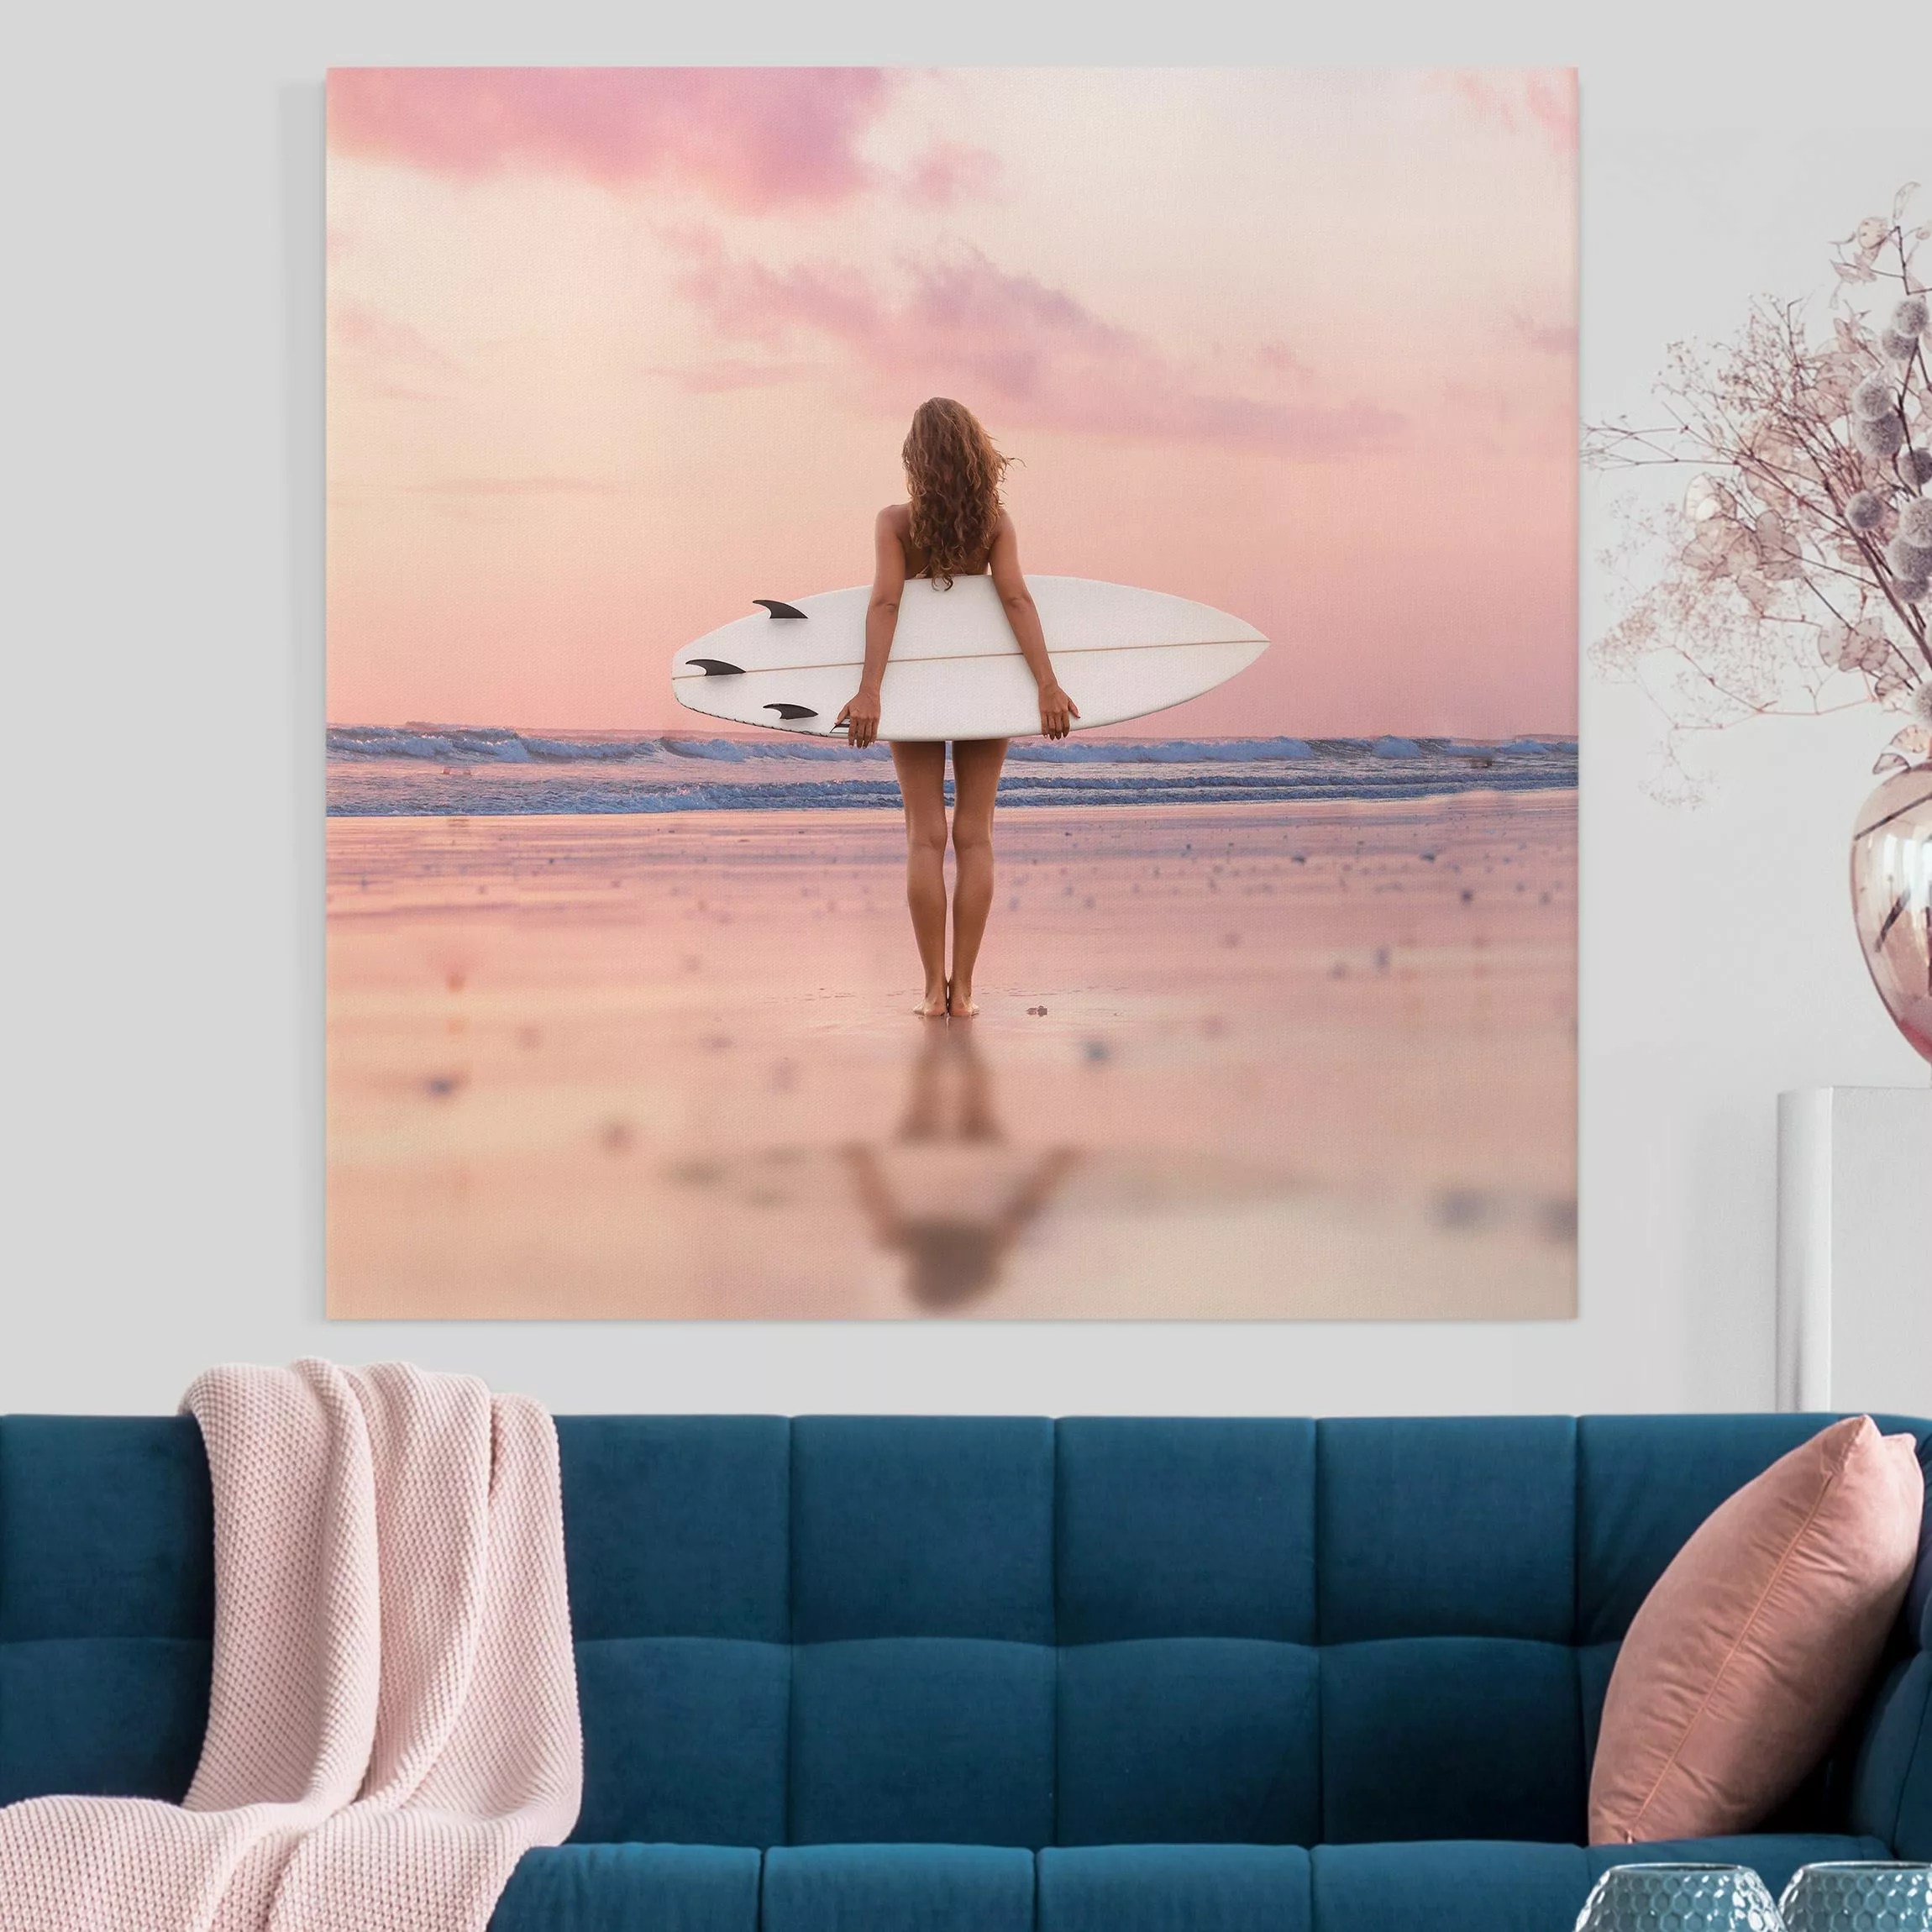 Leinwandbild Surfergirl mit Board im Abendrot günstig online kaufen